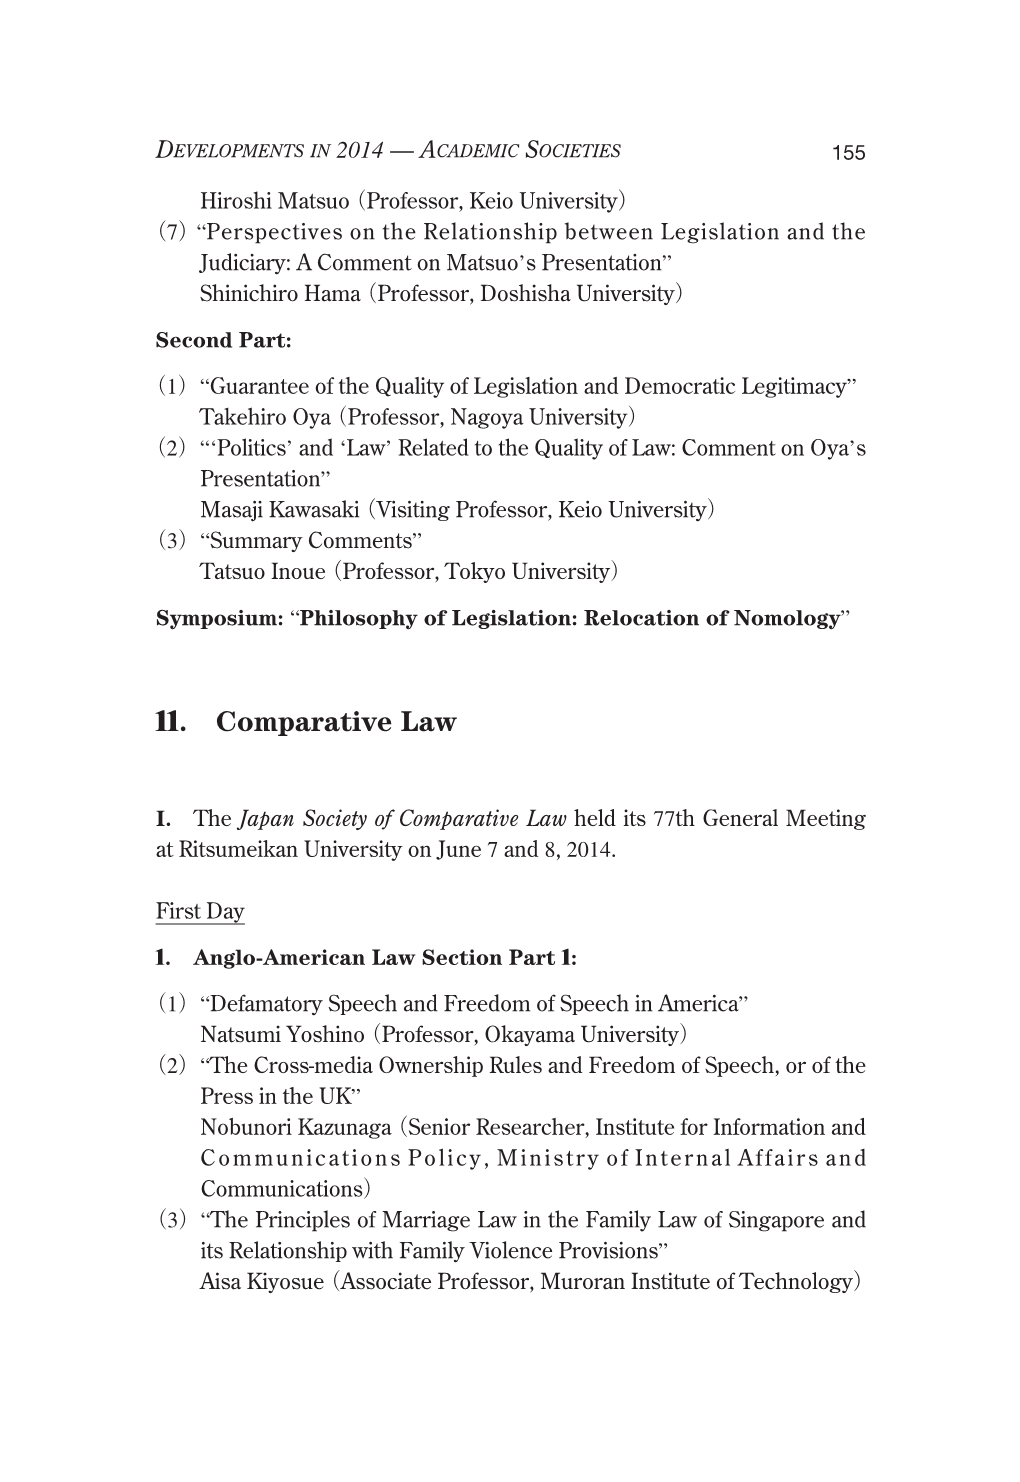 11. Comparative Law